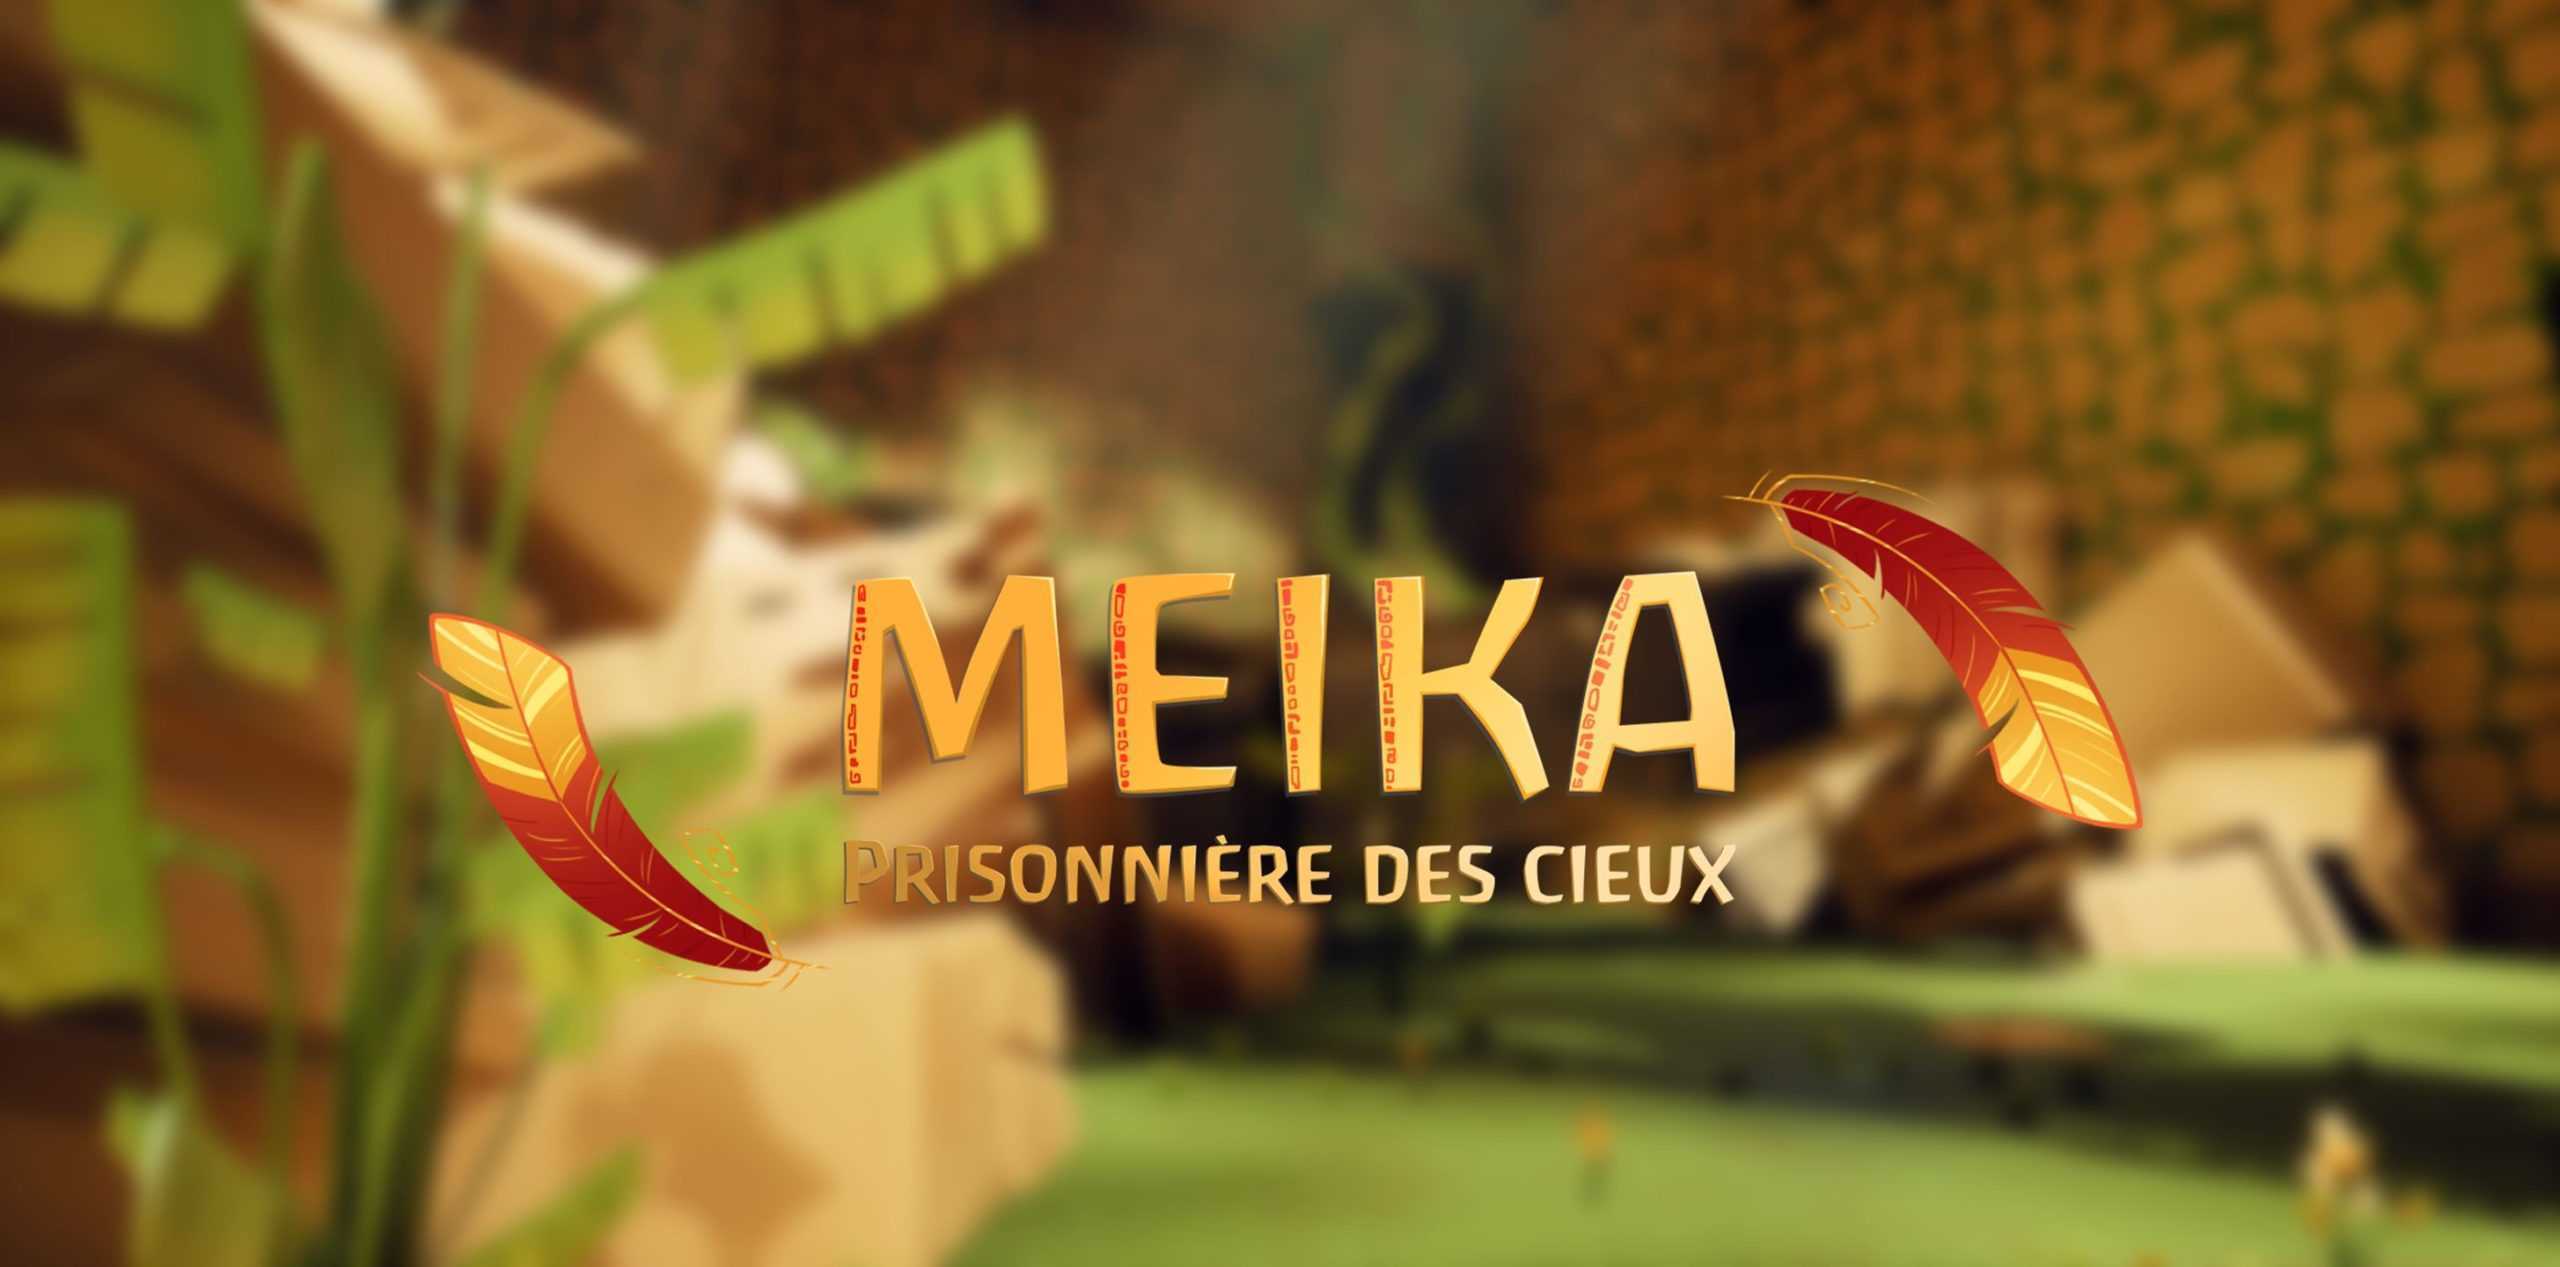 meika-affiche-pegases-scaled.jpg